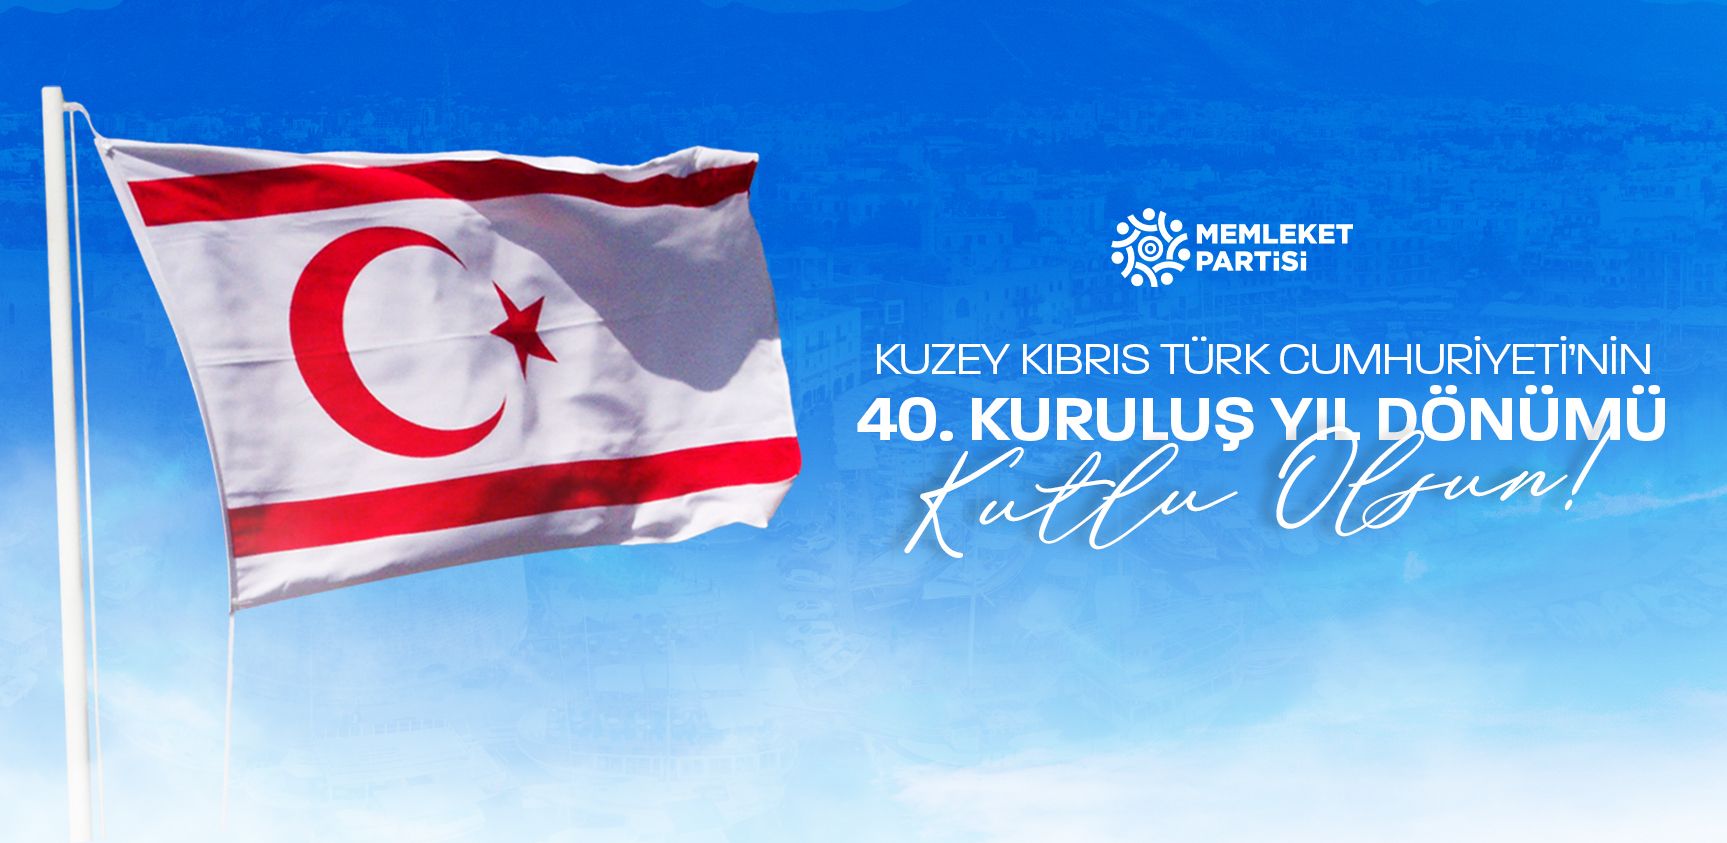 Kuzey Kıbrıs Türk Cumhuriyetimizin 40. kuruluş yıl dönümü kutlu olsun.